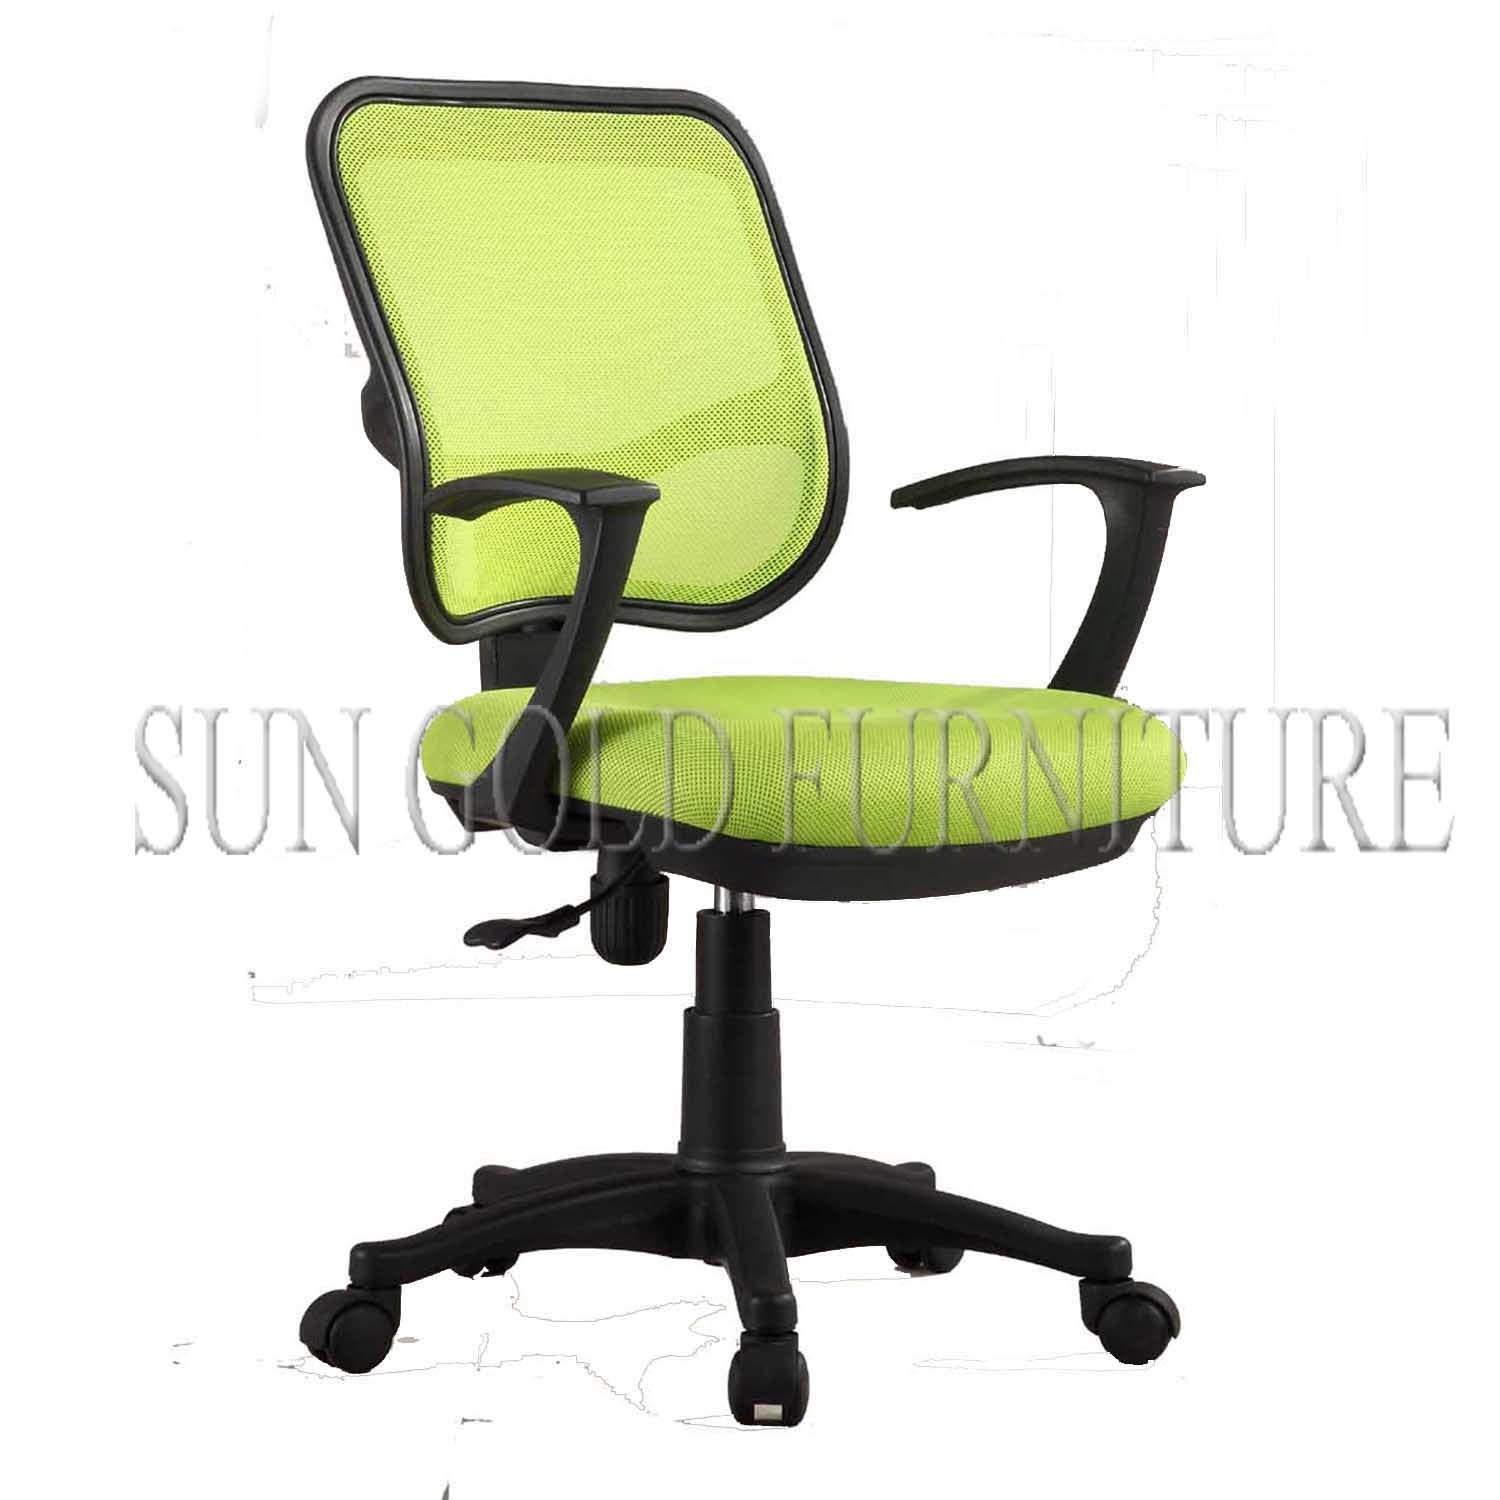 Hot Sale Modern Mesh Fabric Office Staff Chair (SZ-OC163)